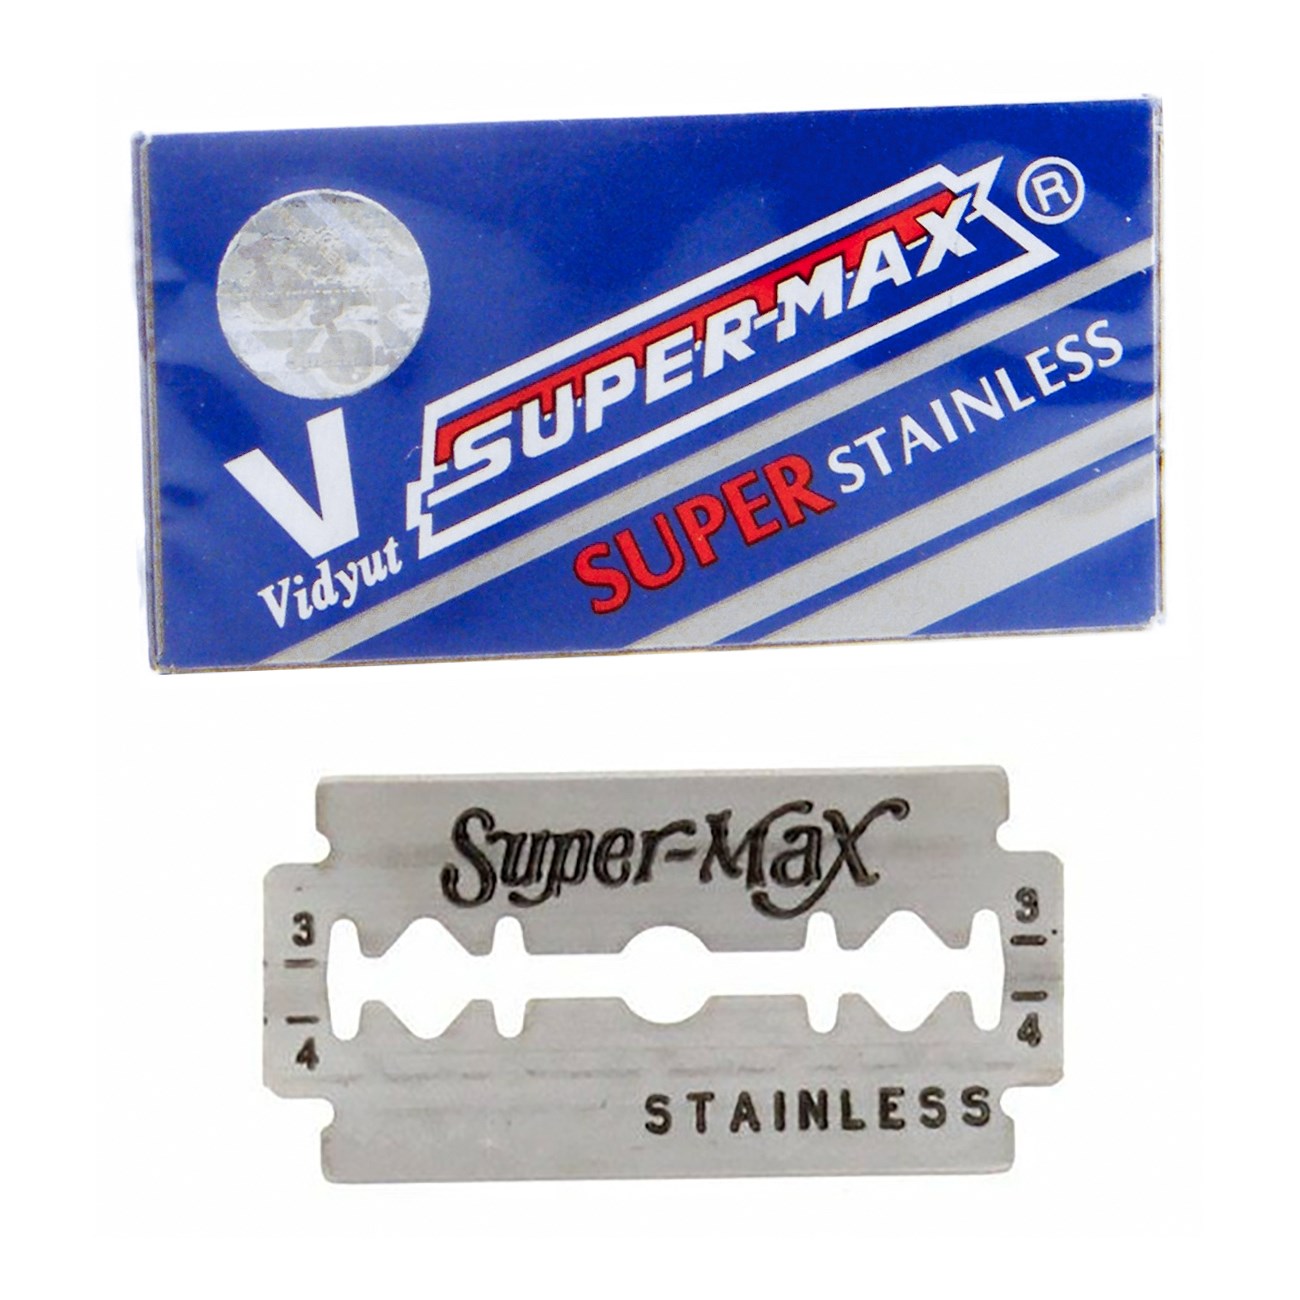 Visdyut, Super-Max Super Stainless Razor Blades